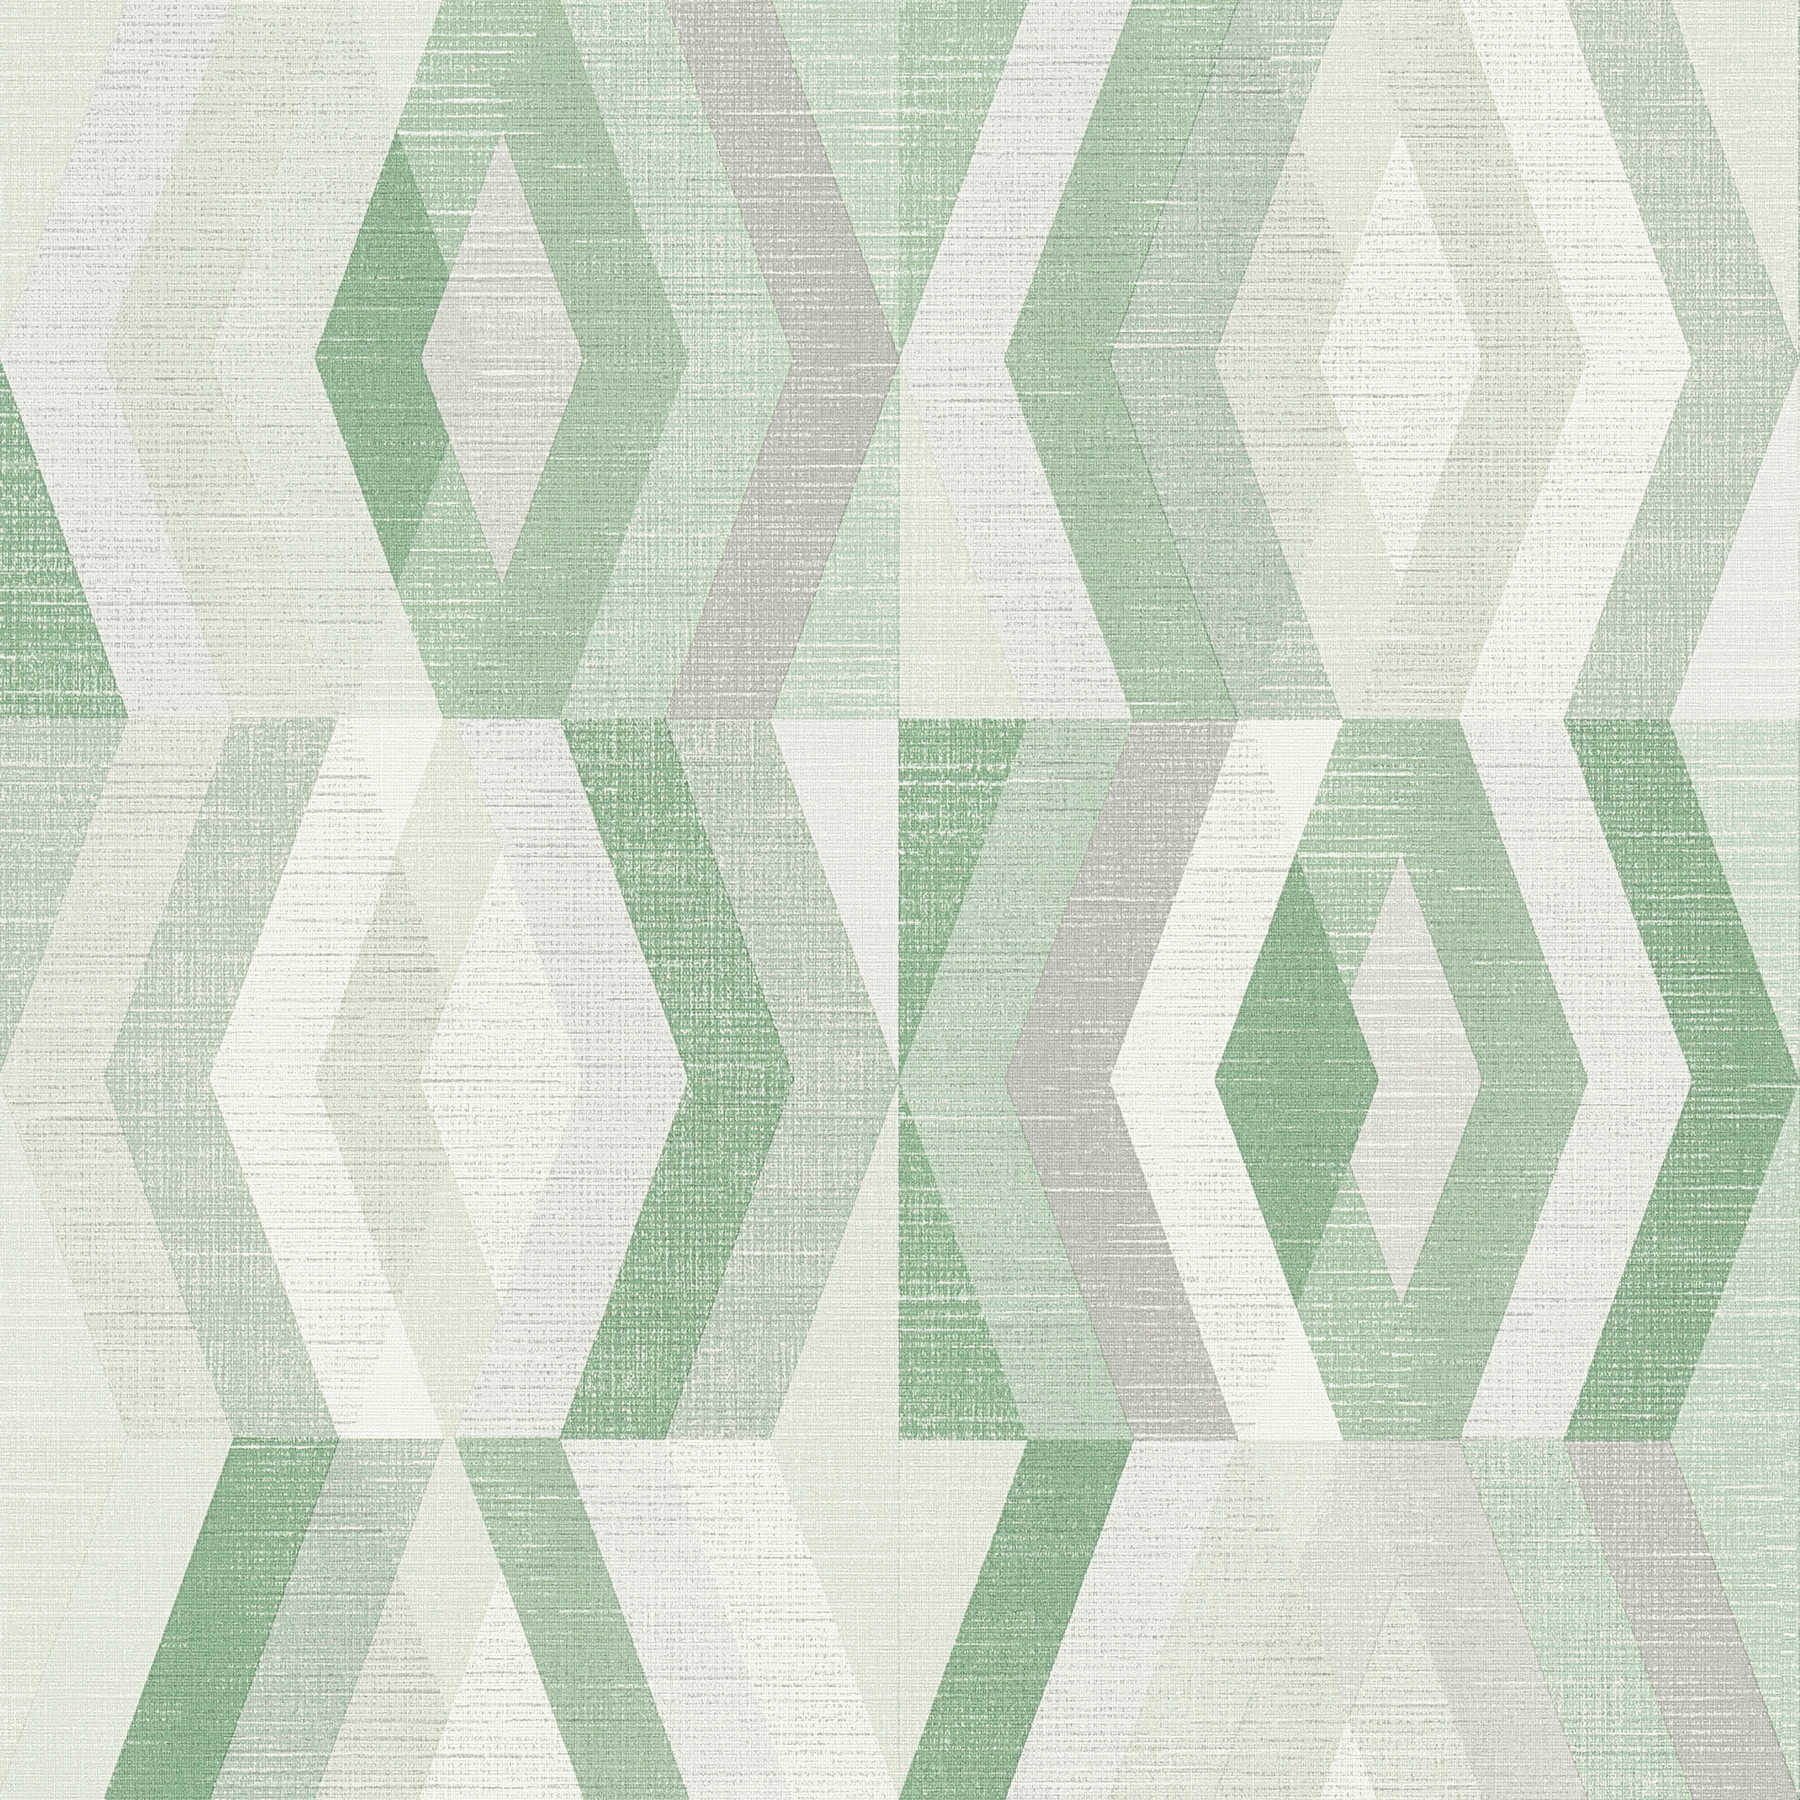         Tapete Scandinavian Stil mit geometrischem Muster - Grün, Grau
    